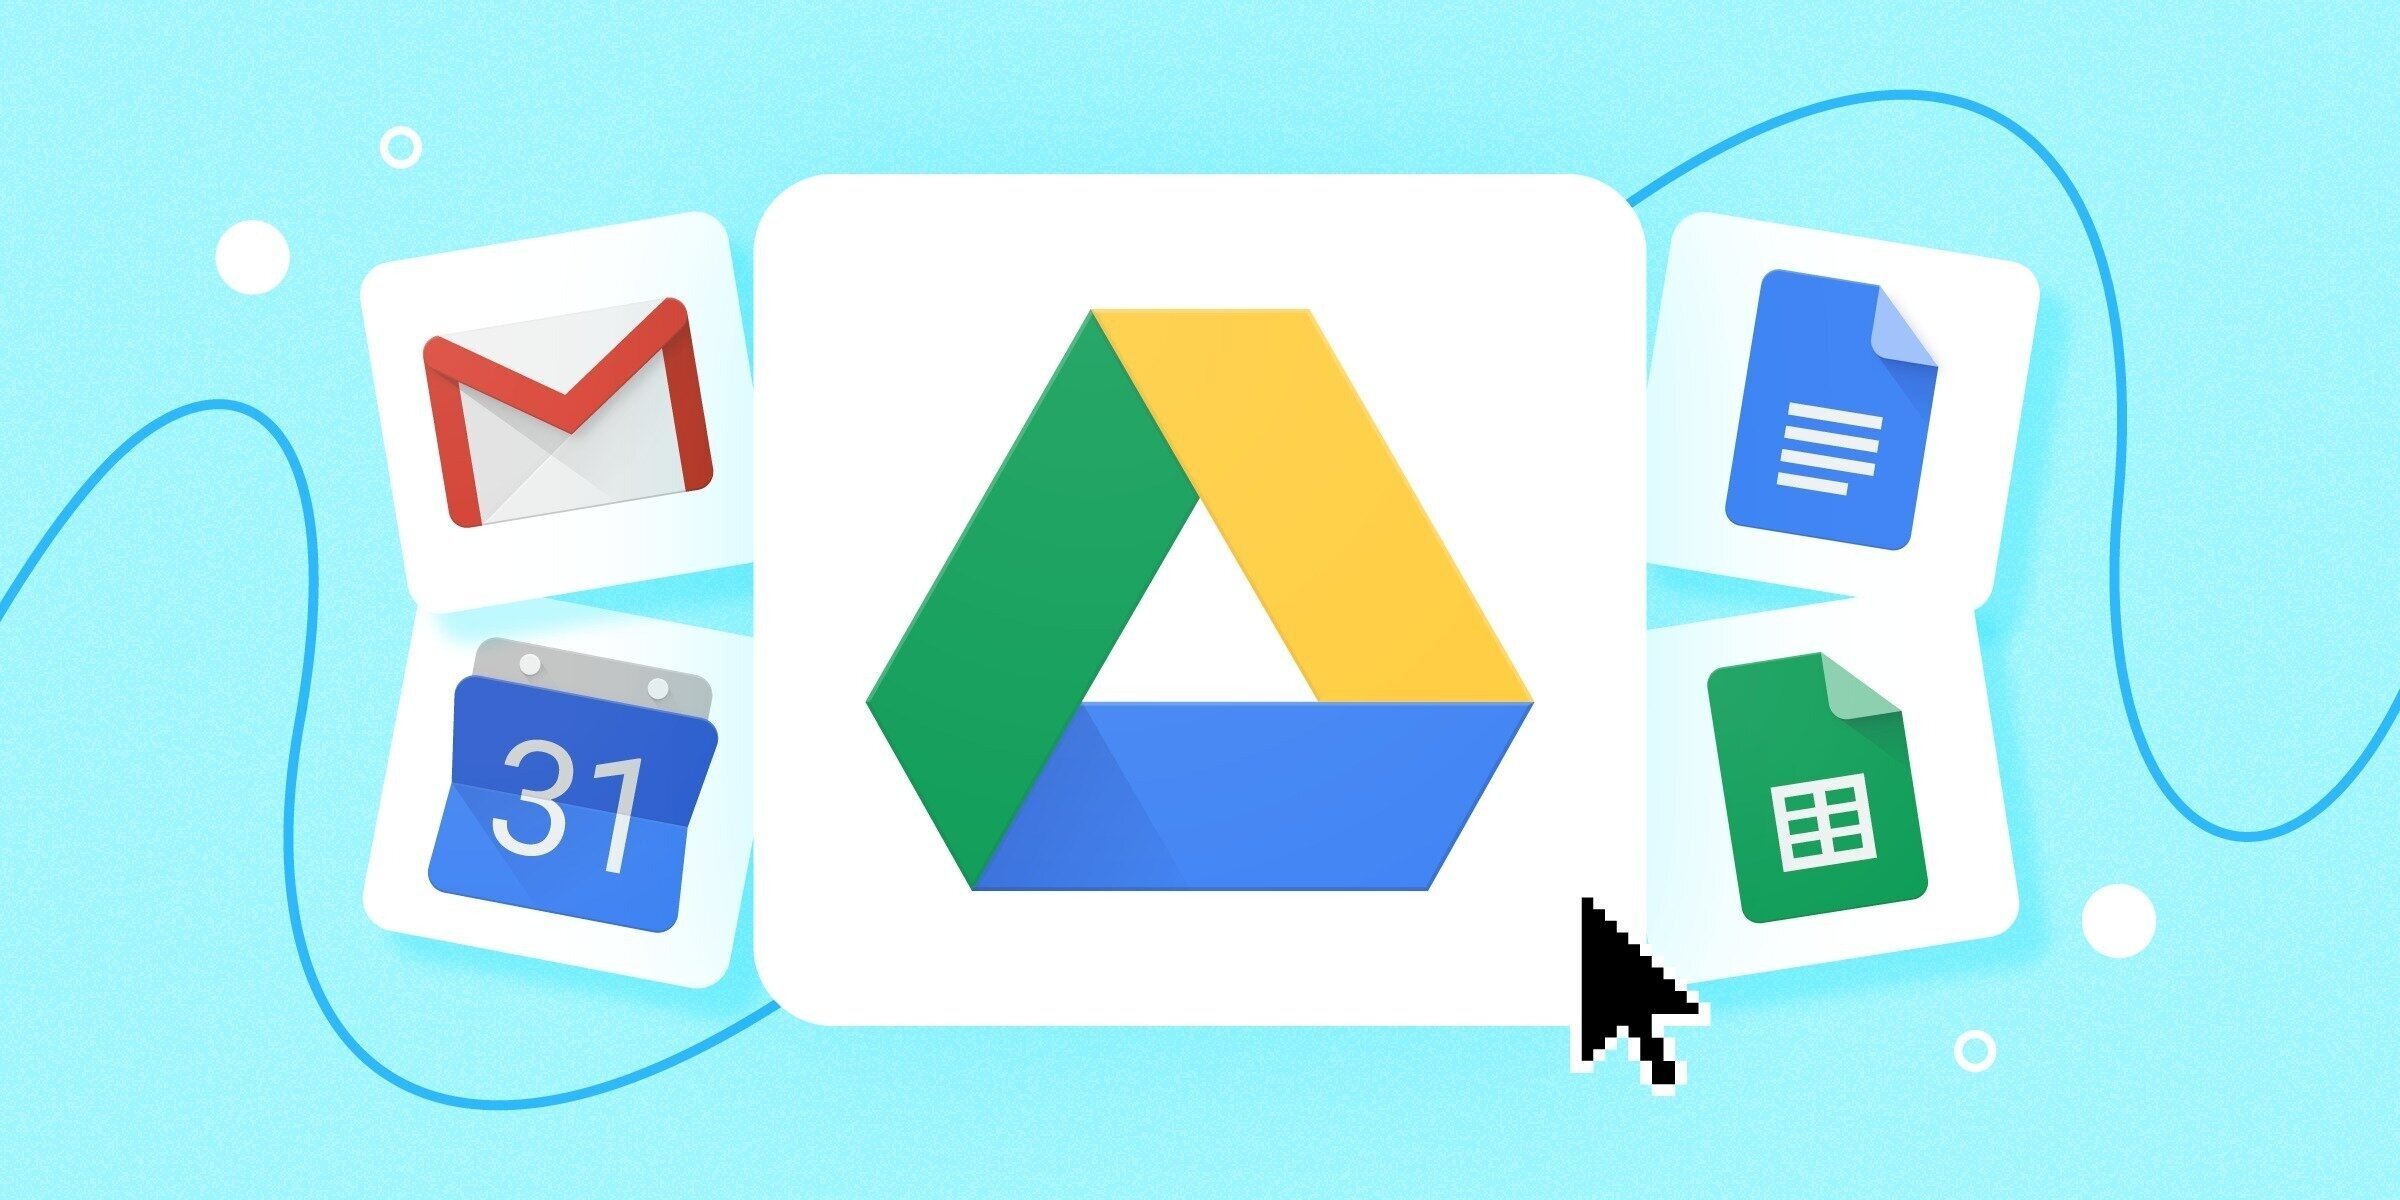 Google Drive desktop user shares missing file reports – Google